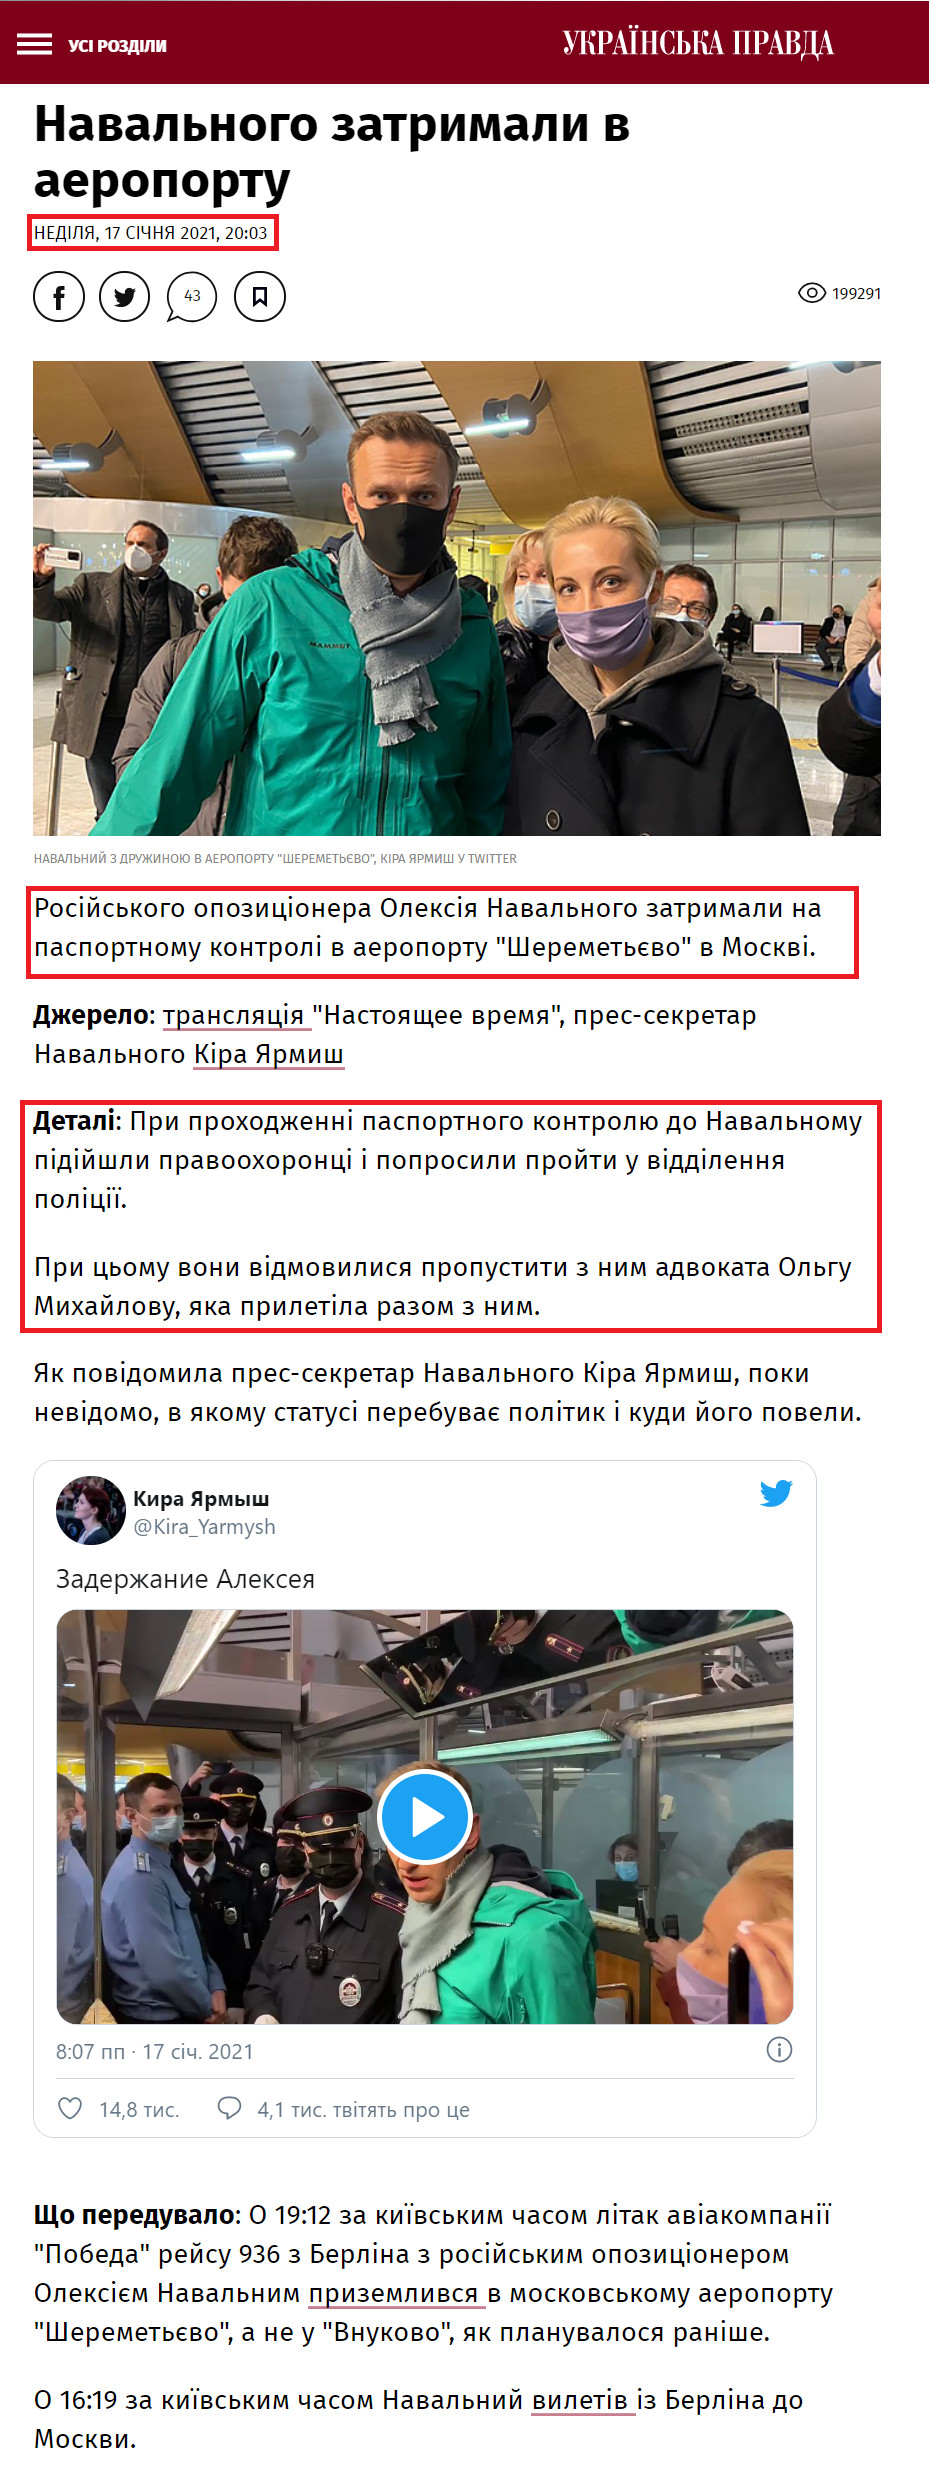 https://www.pravda.com.ua/news/2021/01/17/7280222/